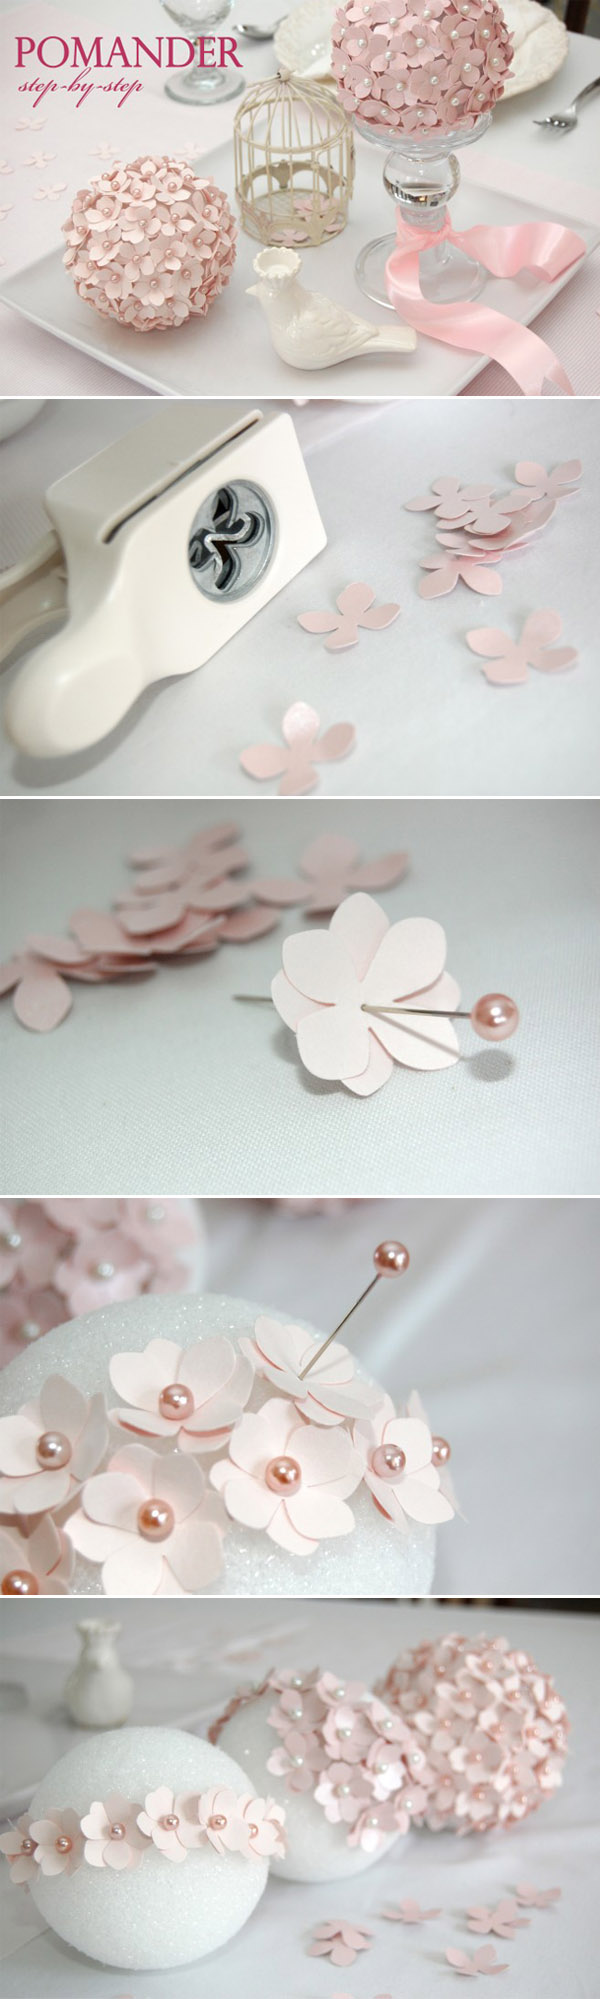 flower-ball-diy-wedding-centerpiece-ideas-for-pink-weddings